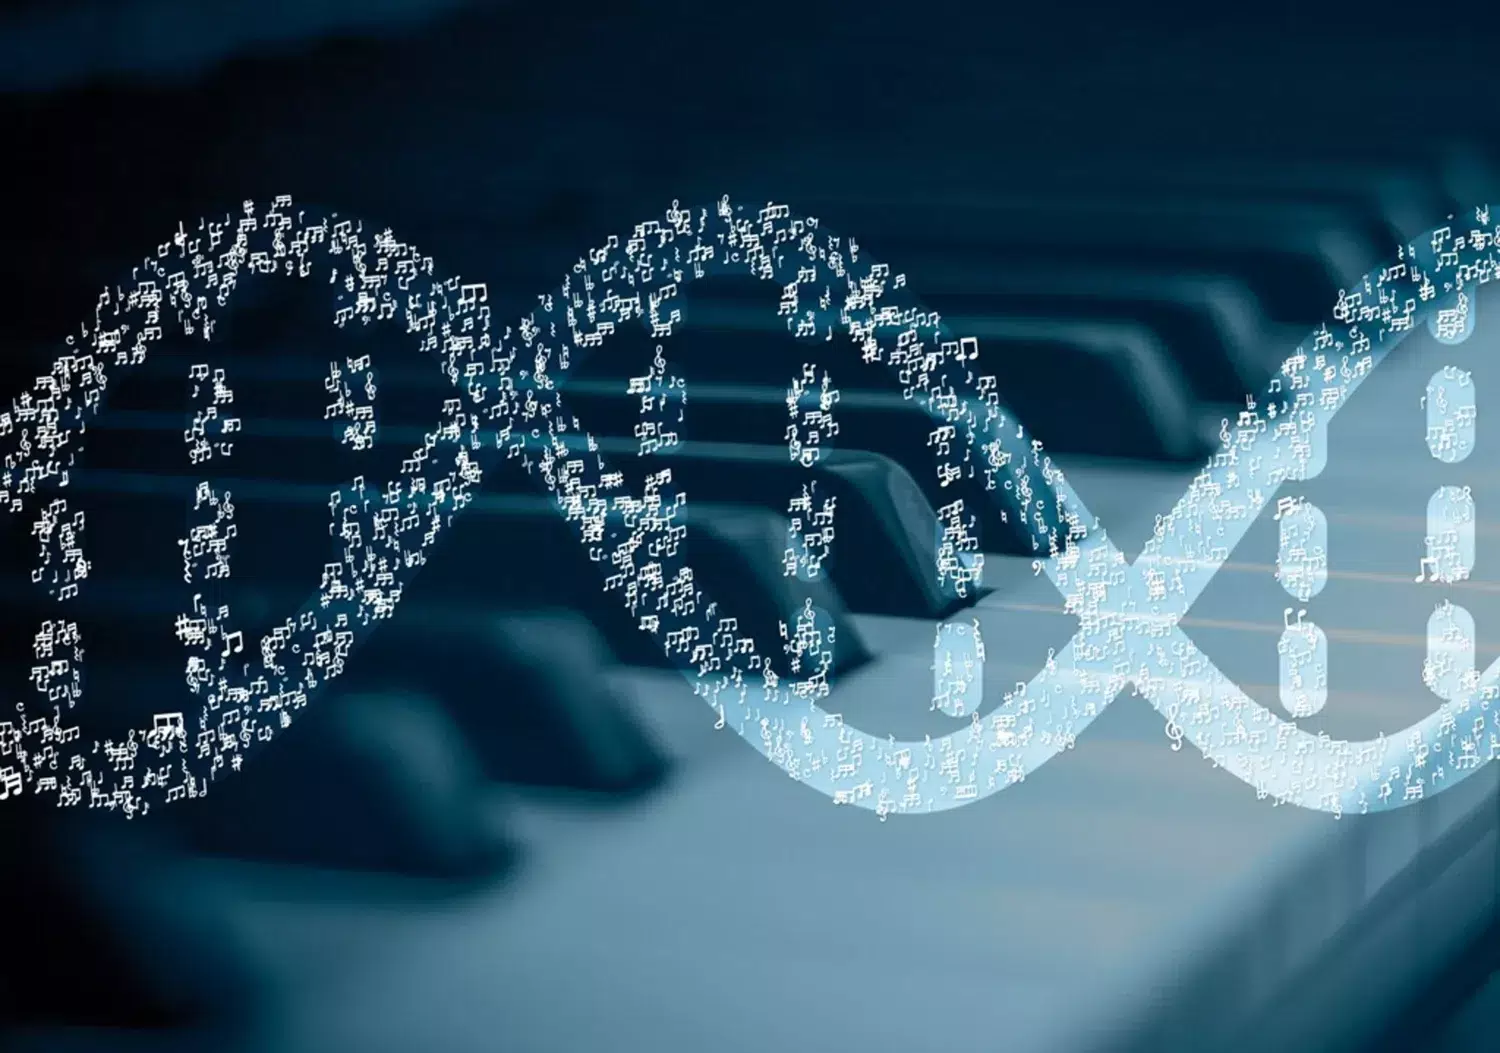 Dekorativ bild som föreställer en musikalisk DNA spiral som används i presentationer av gruppens forskning.